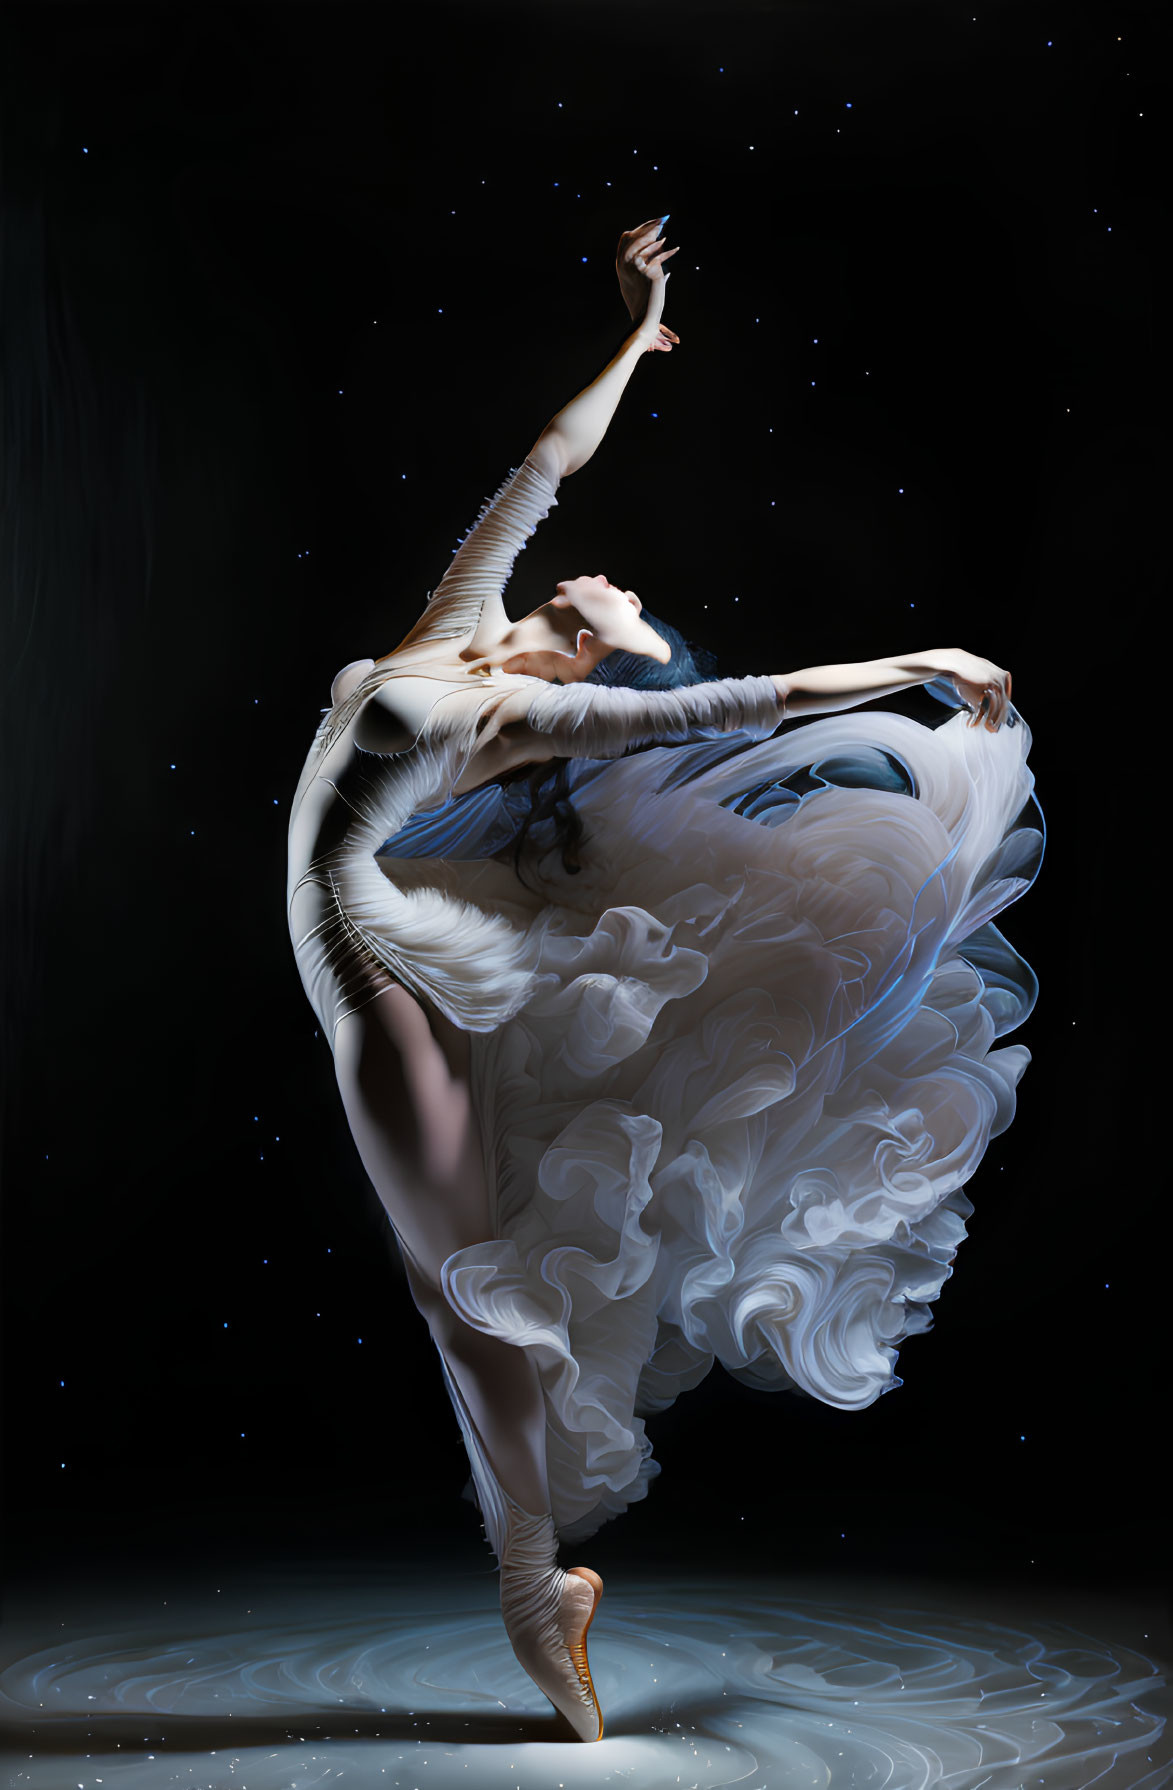 Elegant ballerina in swirling white dress against dark backdrop